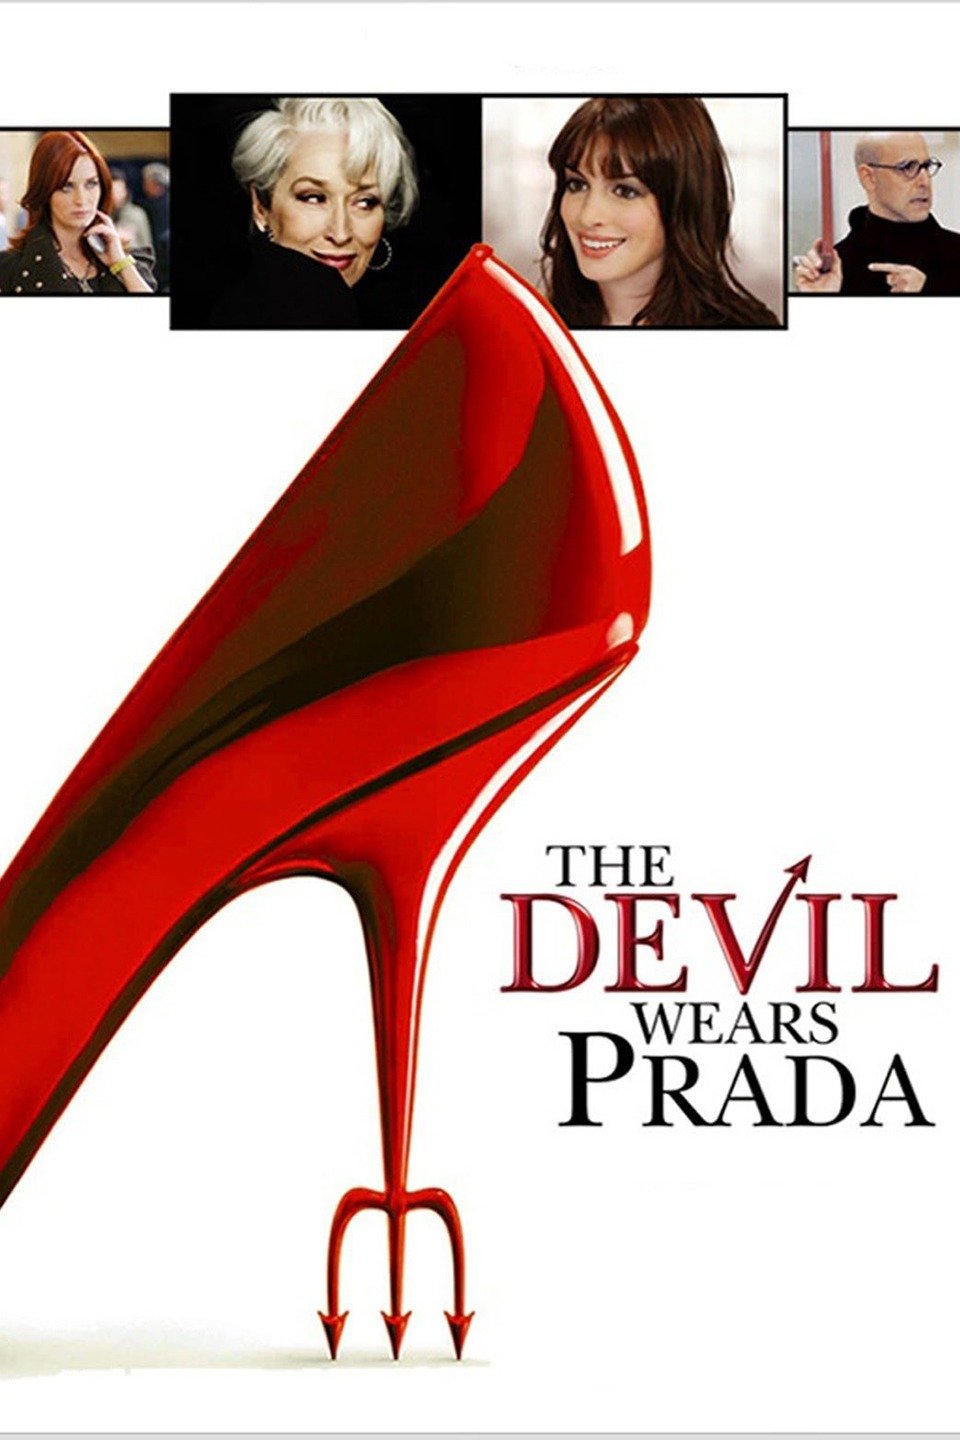 [MINI Super-HQ] The Devil Wears Prada (2006) นางมารสวมปราด้า [1080p] [พากย์ไทย 5.1 + อังกฤษ DTS] [บรรยายไทย + อังกฤษ] [เสียงไทย + ซับไทย] [ONE2UP]